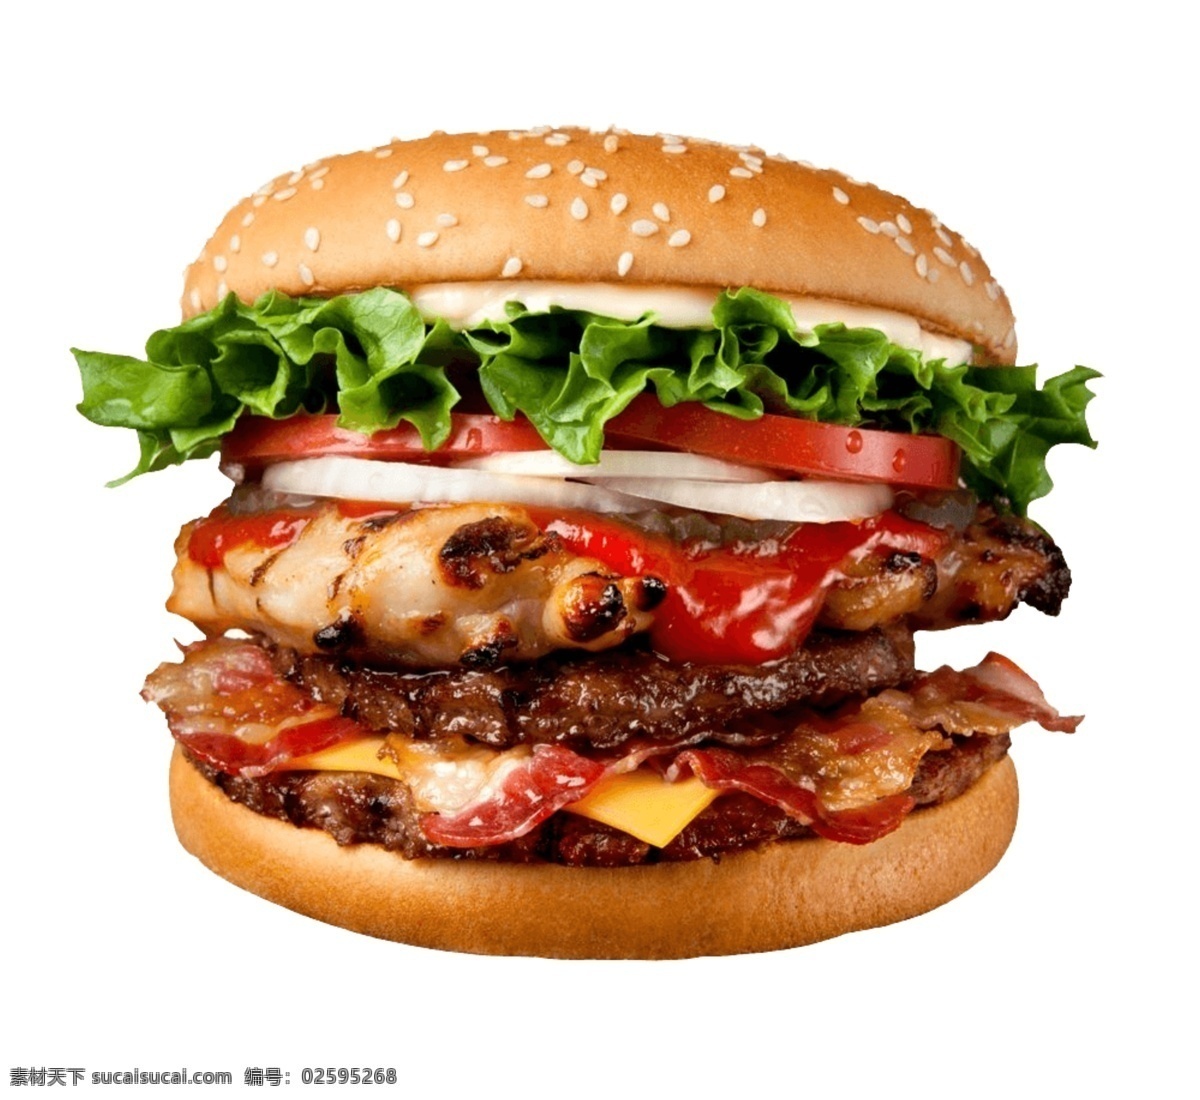 汉堡图片 肯德基 麦当劳 面包 美味汉堡 广告 菜单菜谱 餐饮美食 西餐美食